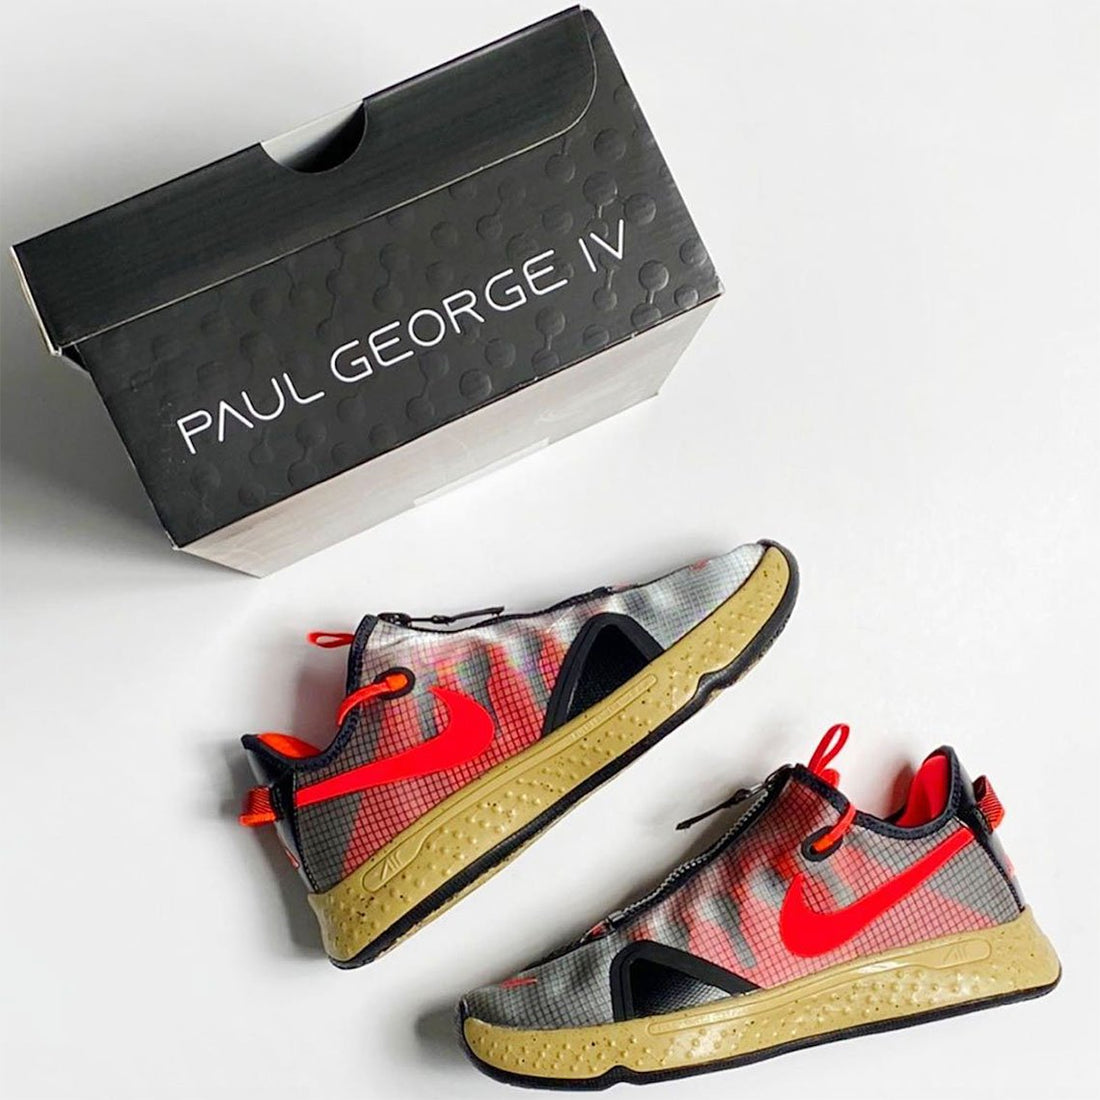 Novo Nike PG 4 PCG é inspirado na linha ACG